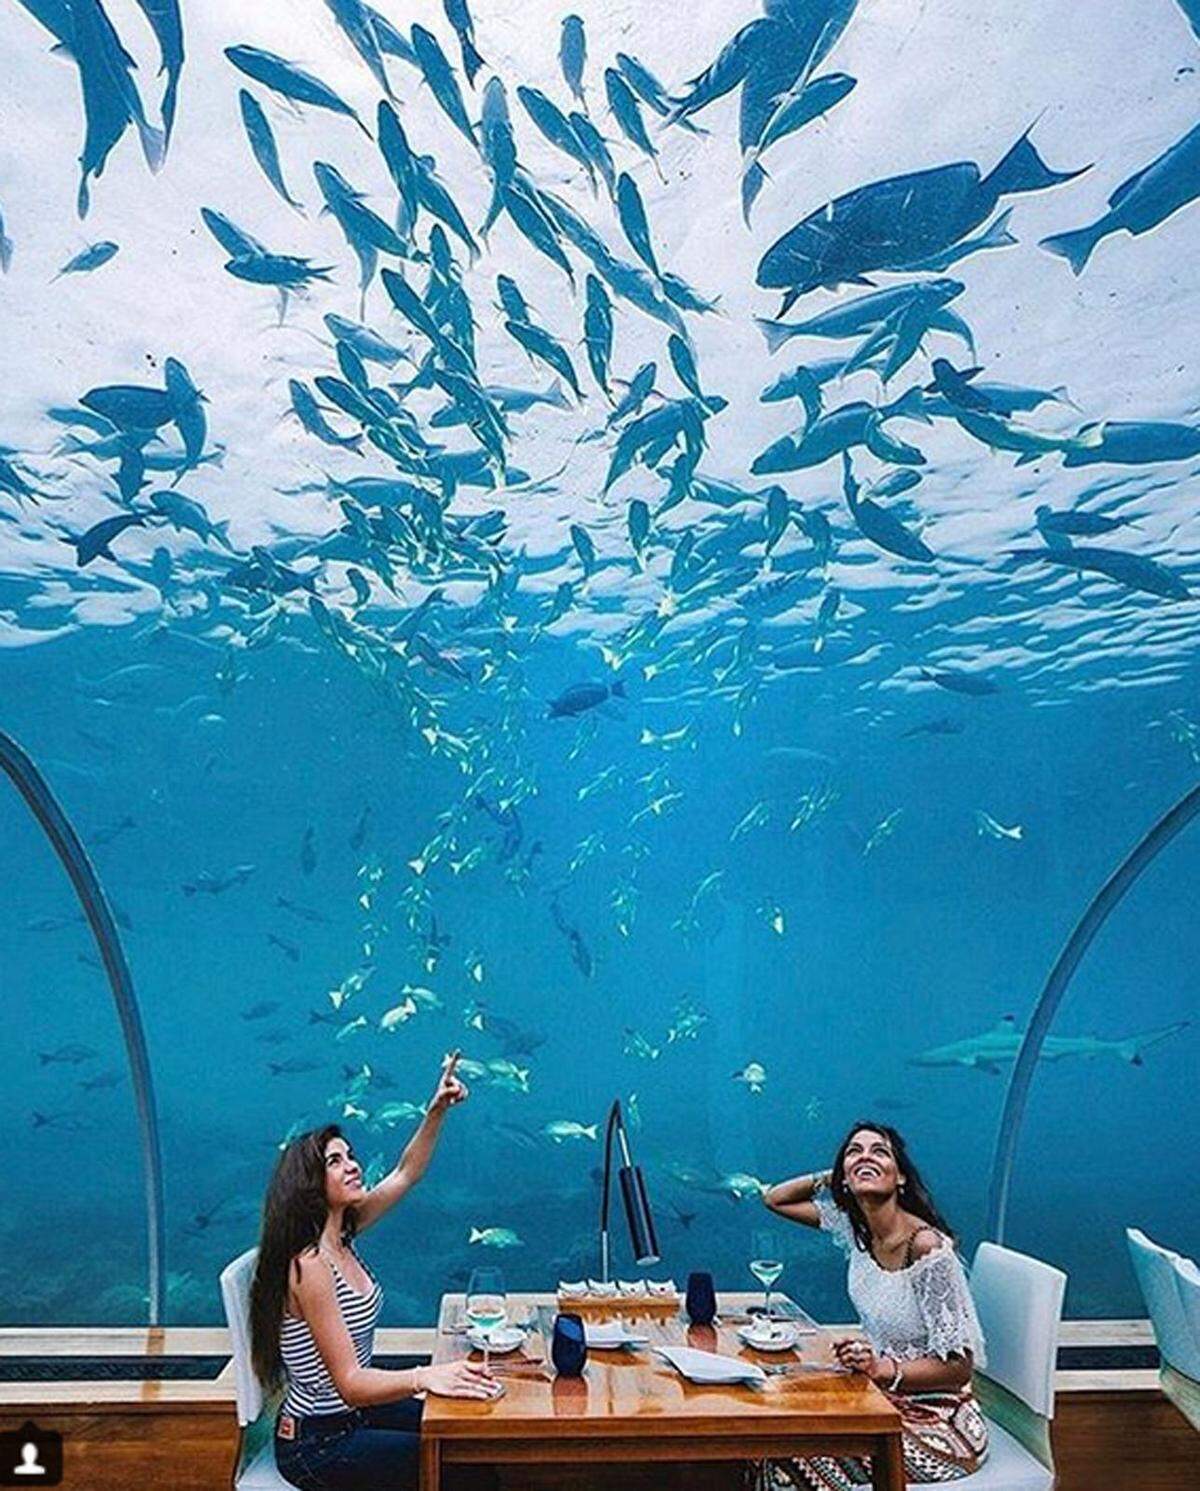 Das Resort auf den Malediven eröffnete bereits 2005 das erste Unterwasserrestaurant. Bald wird eine Unterwasservilla eröffnet, deren Bau 15 Millionen Dollar kostete.